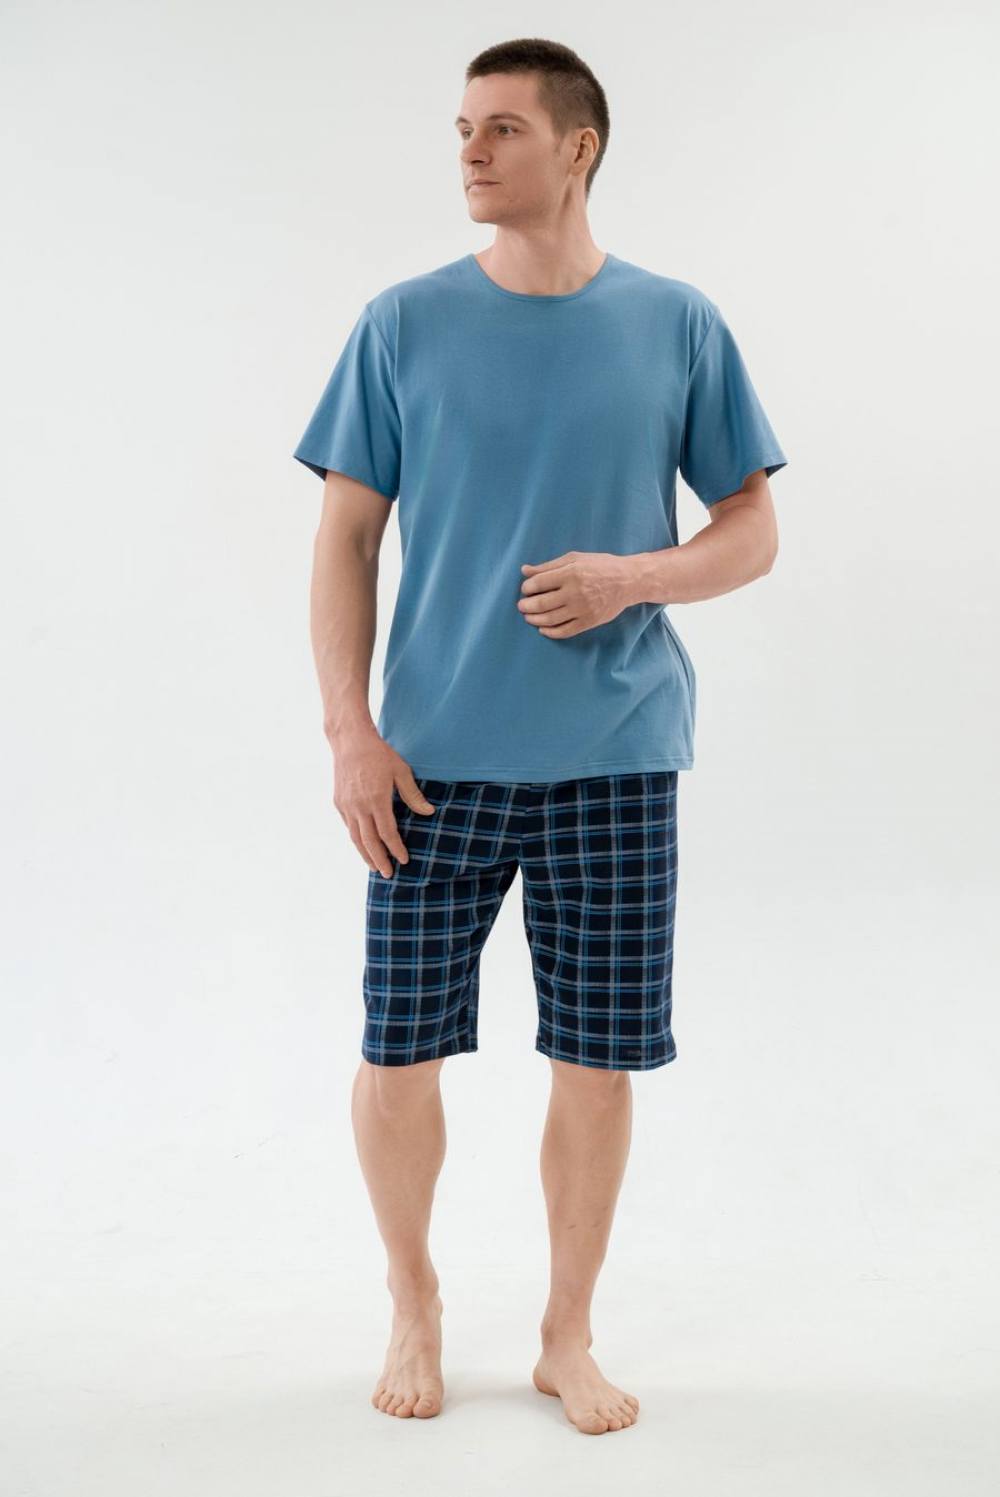 Пижама мужская с шортами. Артикул 000005432